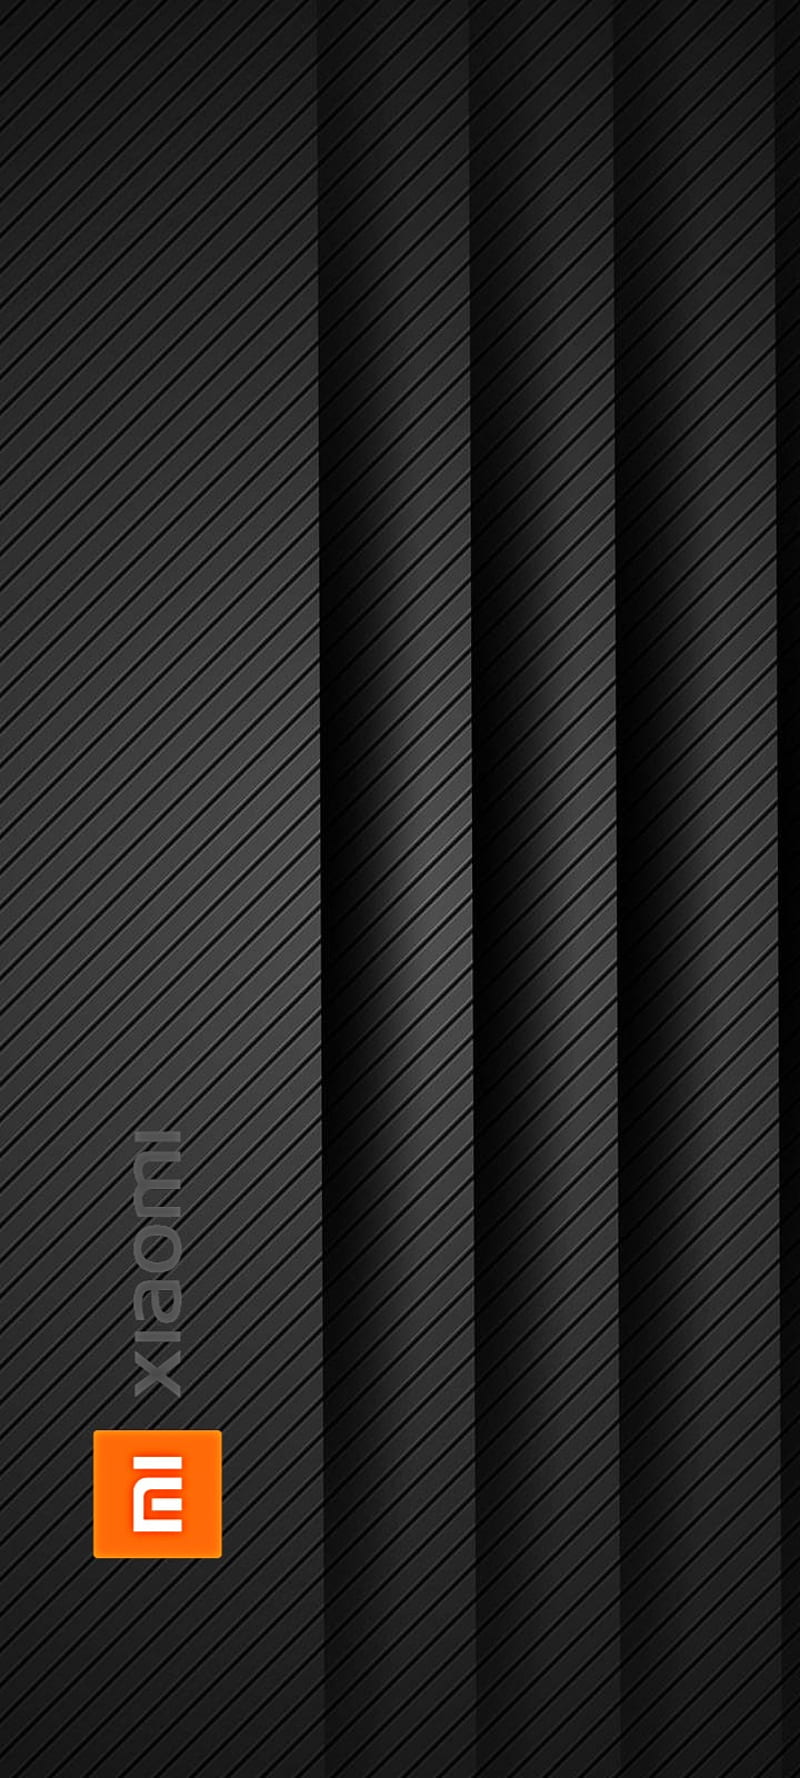 Hình nền điện thoại HD Xiaomi 2 đen - Xiaomi 2 luôn là một sản phẩm được yêu thích bởi cấu hình tốt và thiết kế đẹp mắt. Vậy tại sao bạn không thử sử dụng một hình nền đẹp cho điện thoại của mình? Hình nền điện thoại HD Xiaomi 2 đen là một lựa chọn hoàn hảo, mang lại sự thanh lịch và sự chuyên nghiệp. Hãy xem các hình ảnh liên quan để lựa chọn hình nền ưng ý nhất.